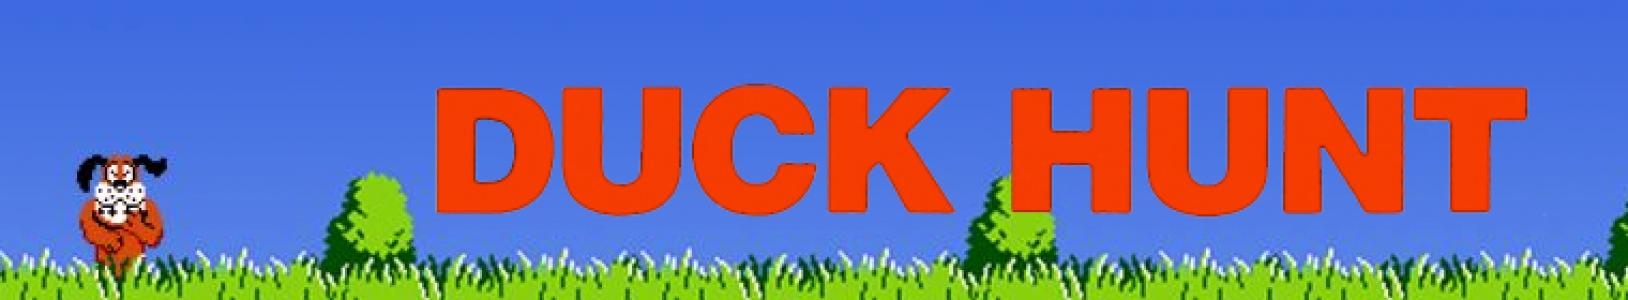 Duck Hunt banner